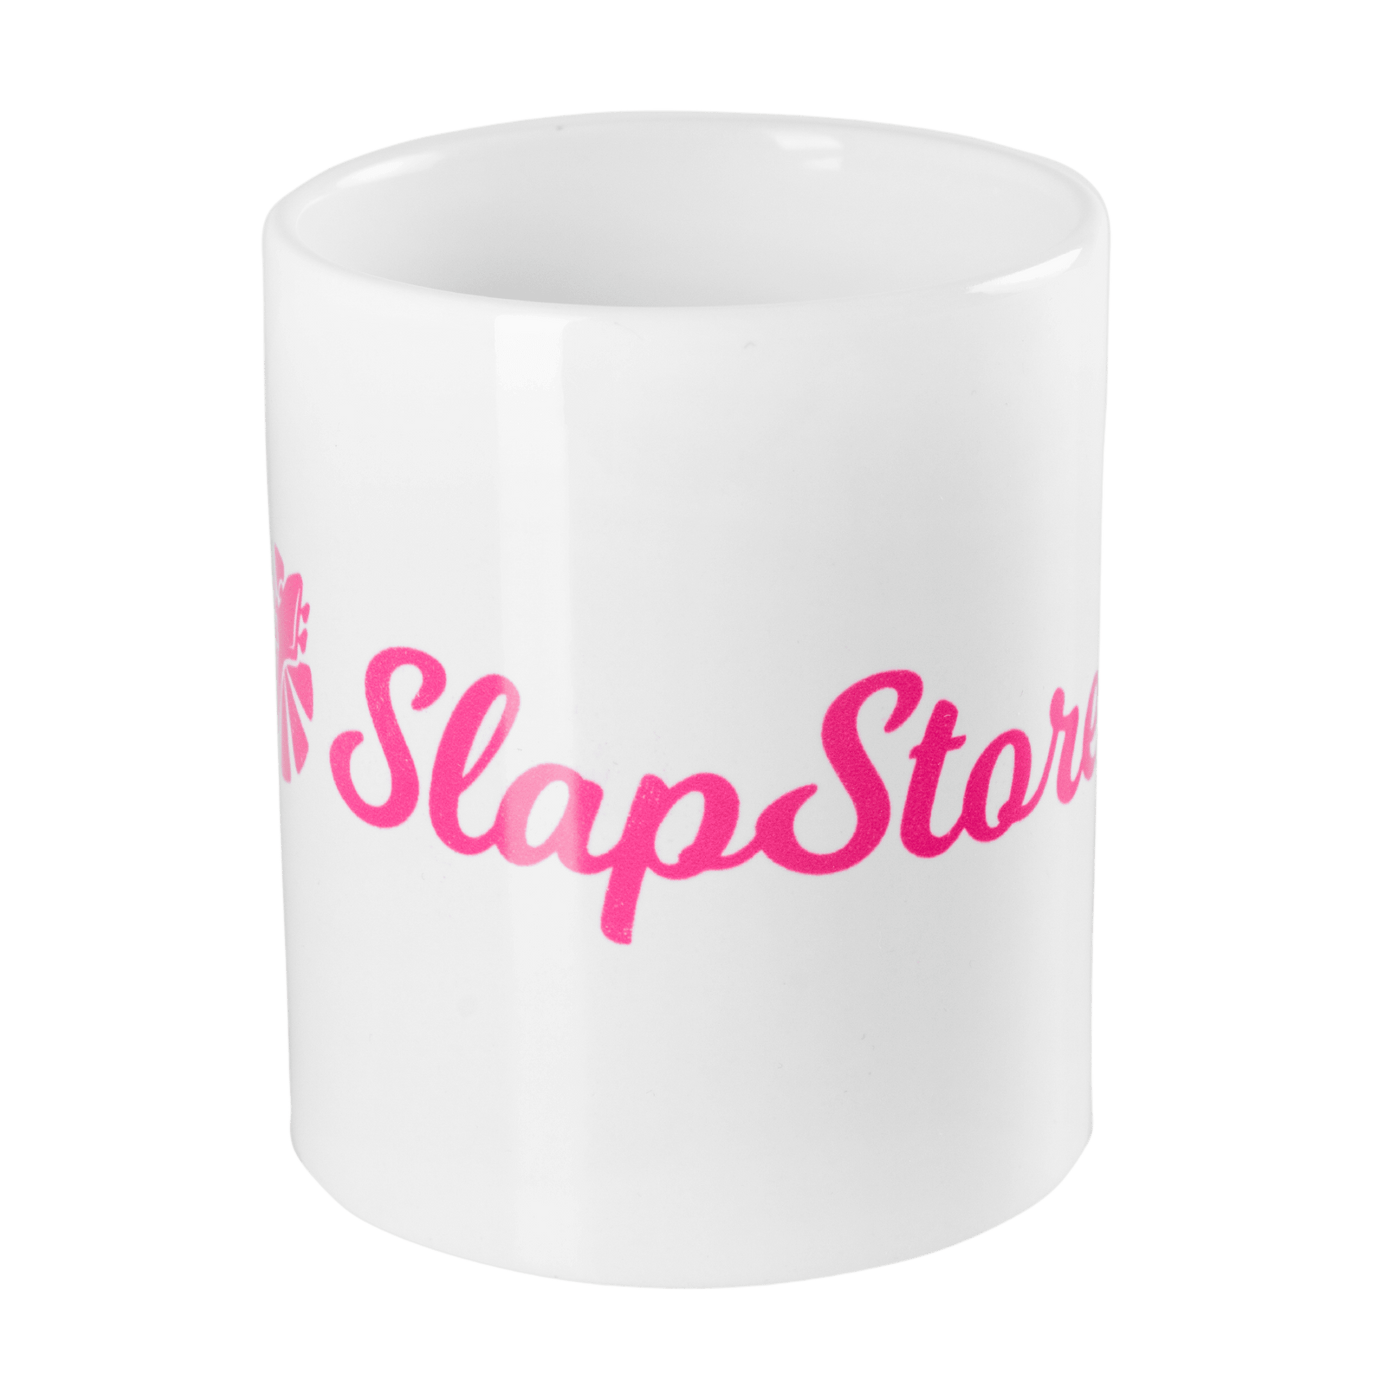 Tazón SlapStore (Premium Edition Natural Edge) - ¿Quieres sonar de alta gama como todos tus artistas favoritos? ¡No busques más! Con este tazón podr...... NAH, MENTIRA.... Es sólo un tazón ql, pero es muy bonito porque dice Slapstore. taza slapstore, mug